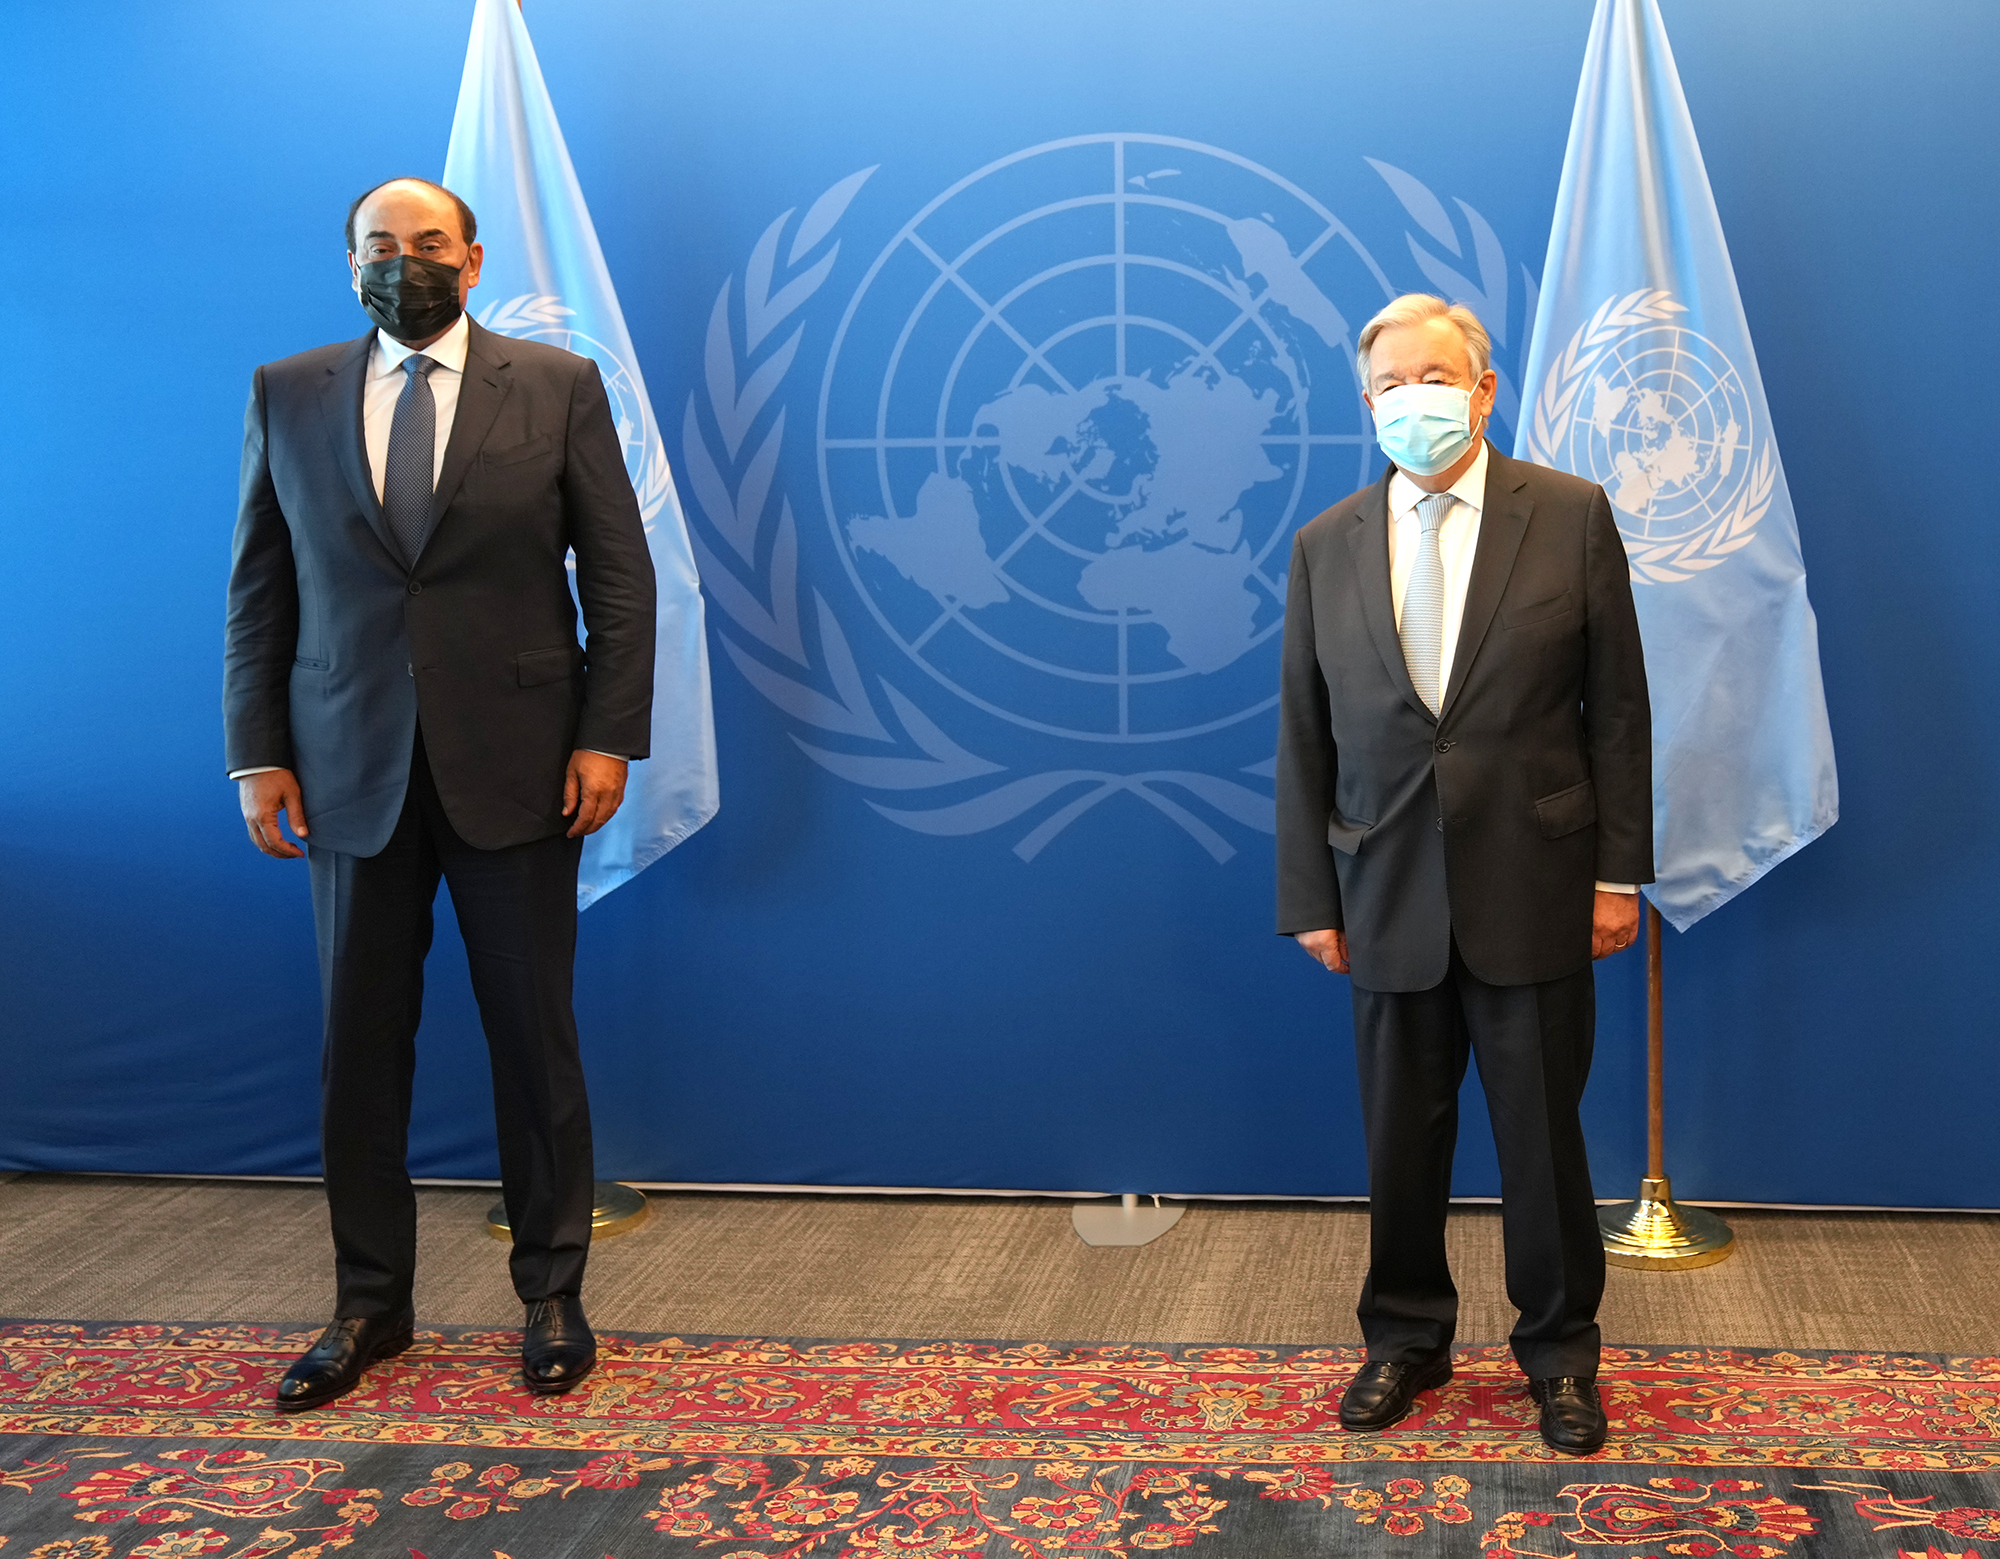 سمو الشيخ صباح خالد الحمد الصباح رئيس مجلس الوزراء خلال لقائه مع الأمين العام للأمم المتحدة